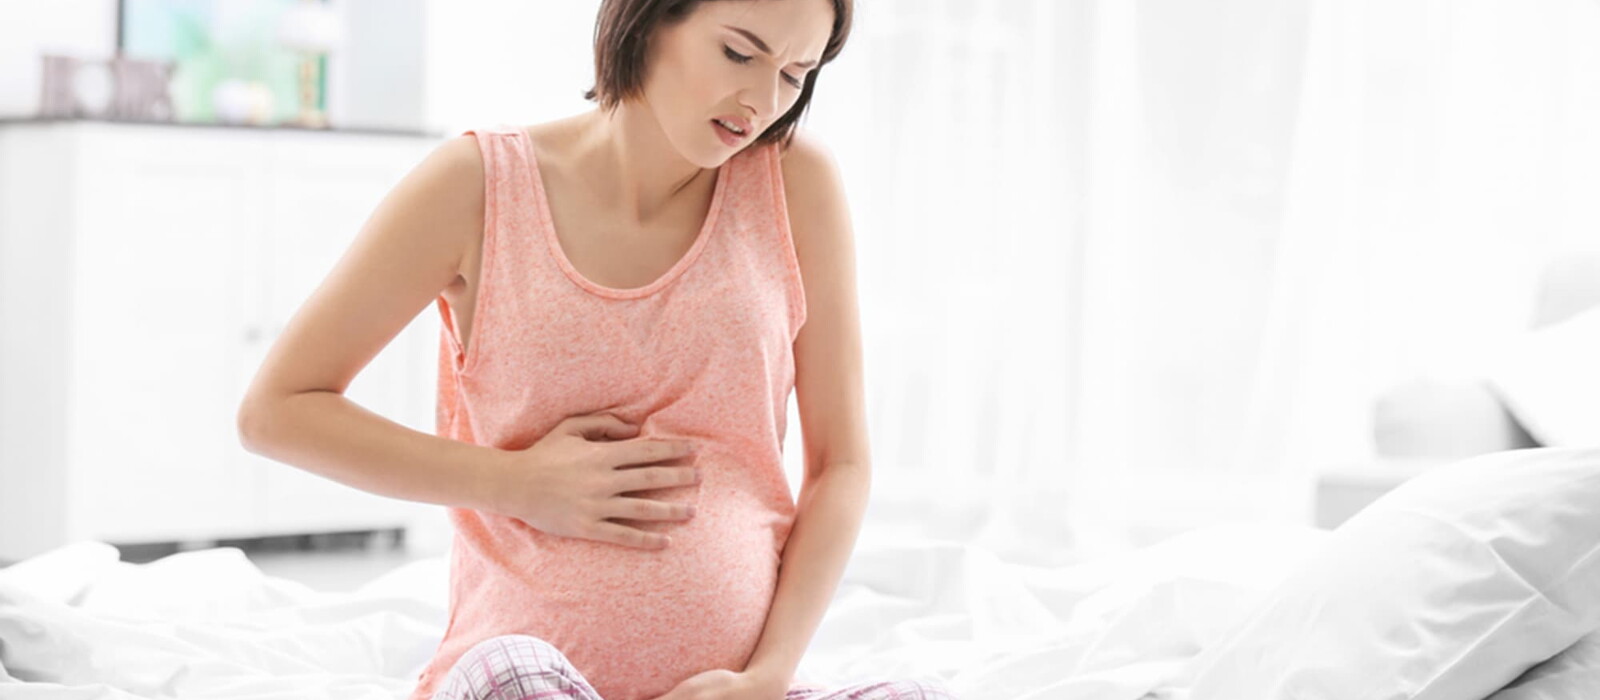 懷孕肚子痛該怎麼辦